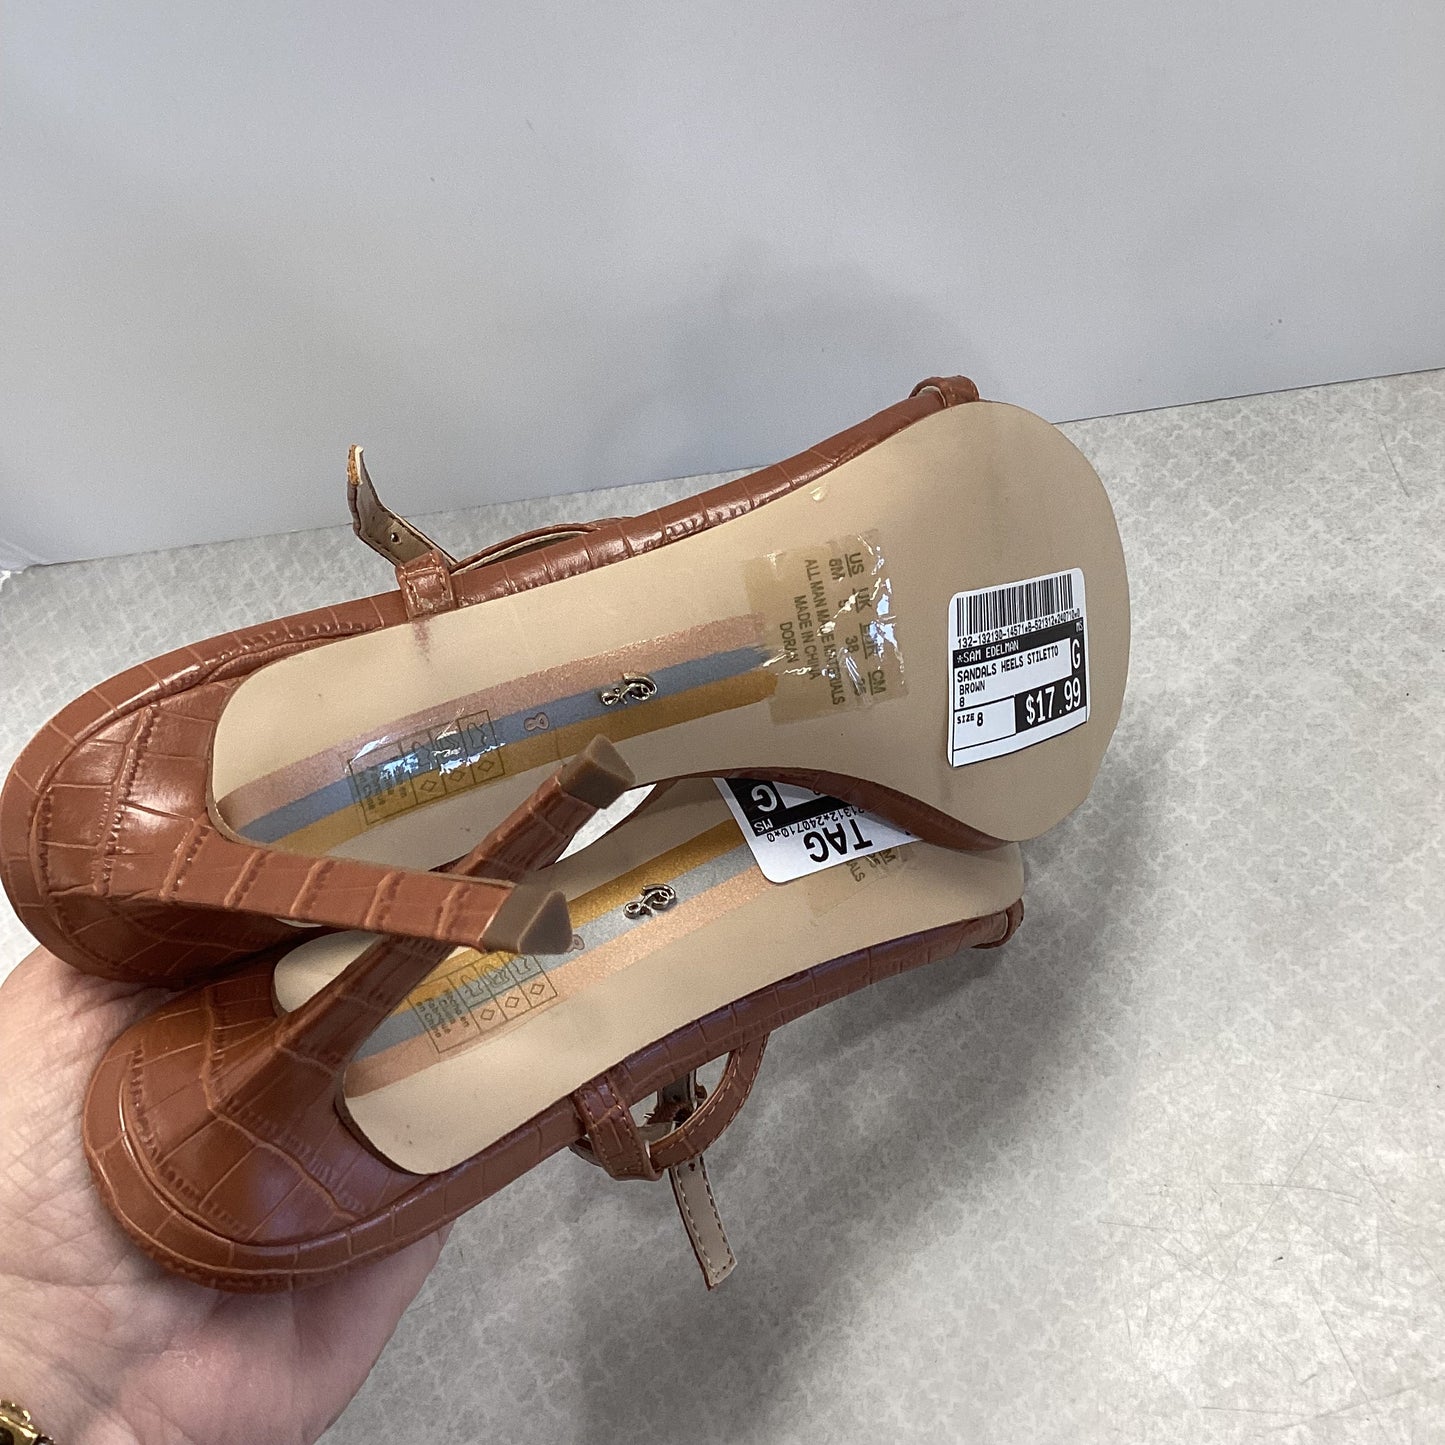 Brown Sandals Heels Stiletto Sam Edelman, Size 8